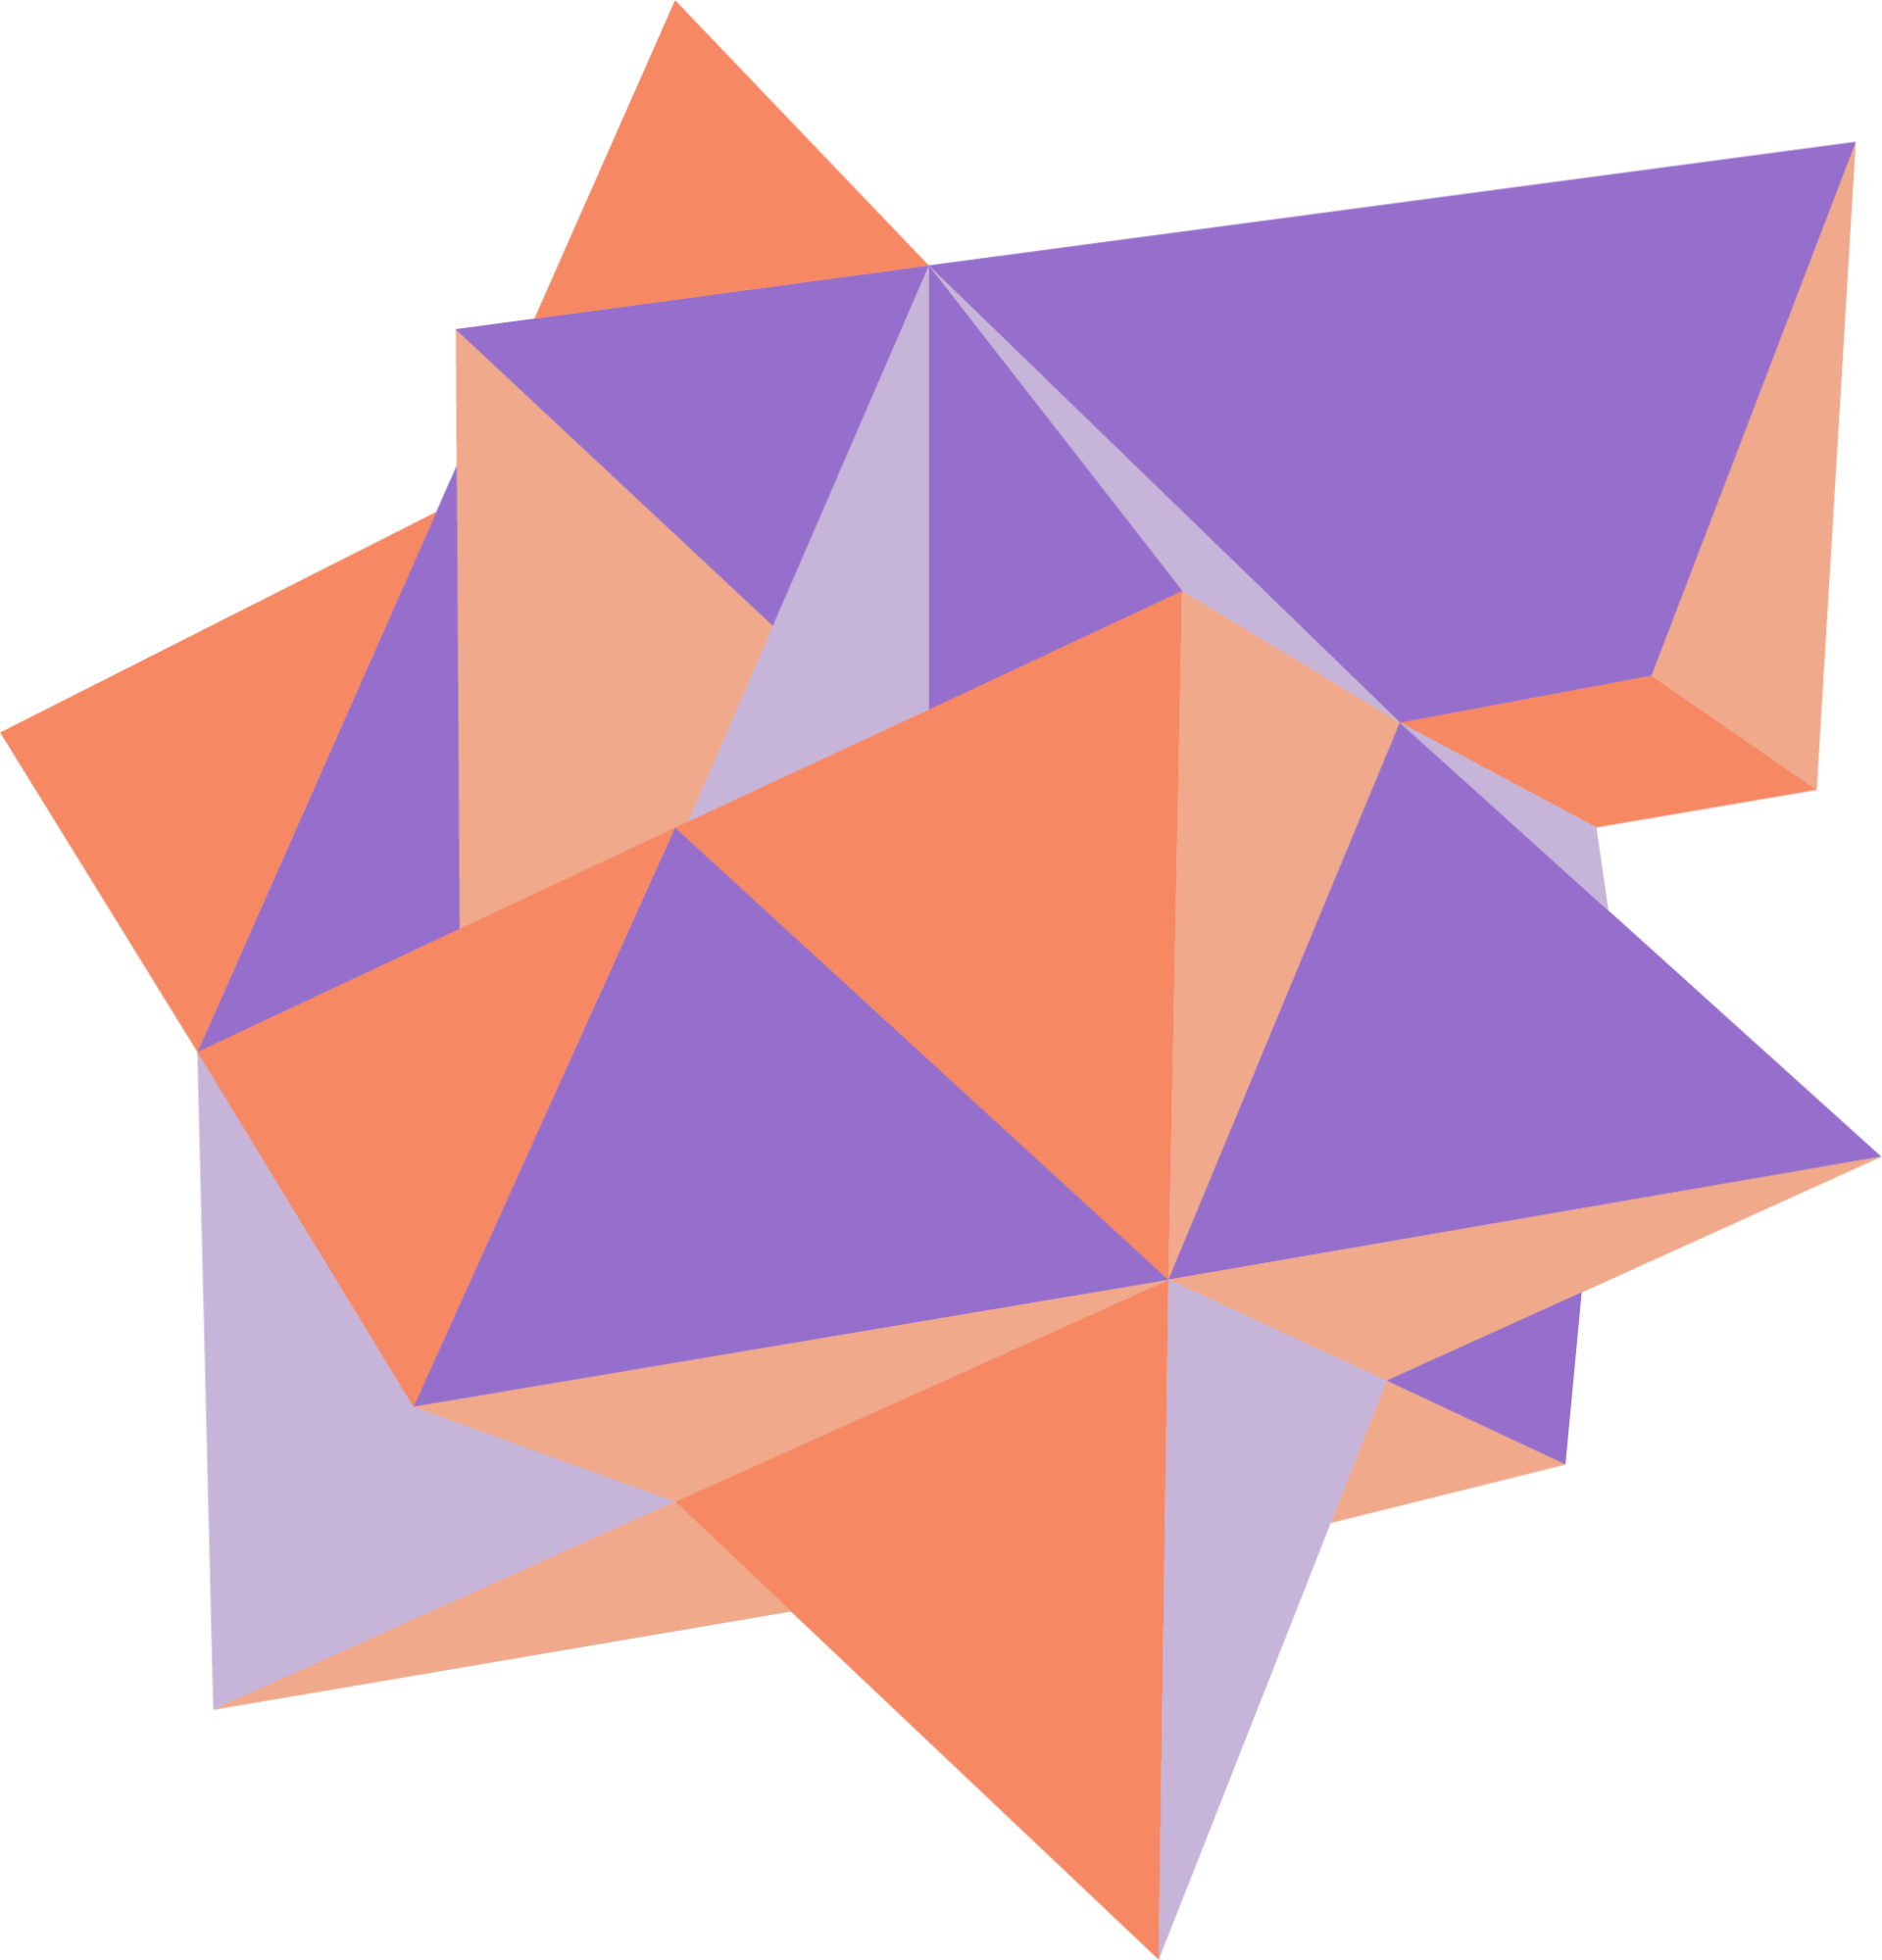 A purple and orange geometric shape on a white background